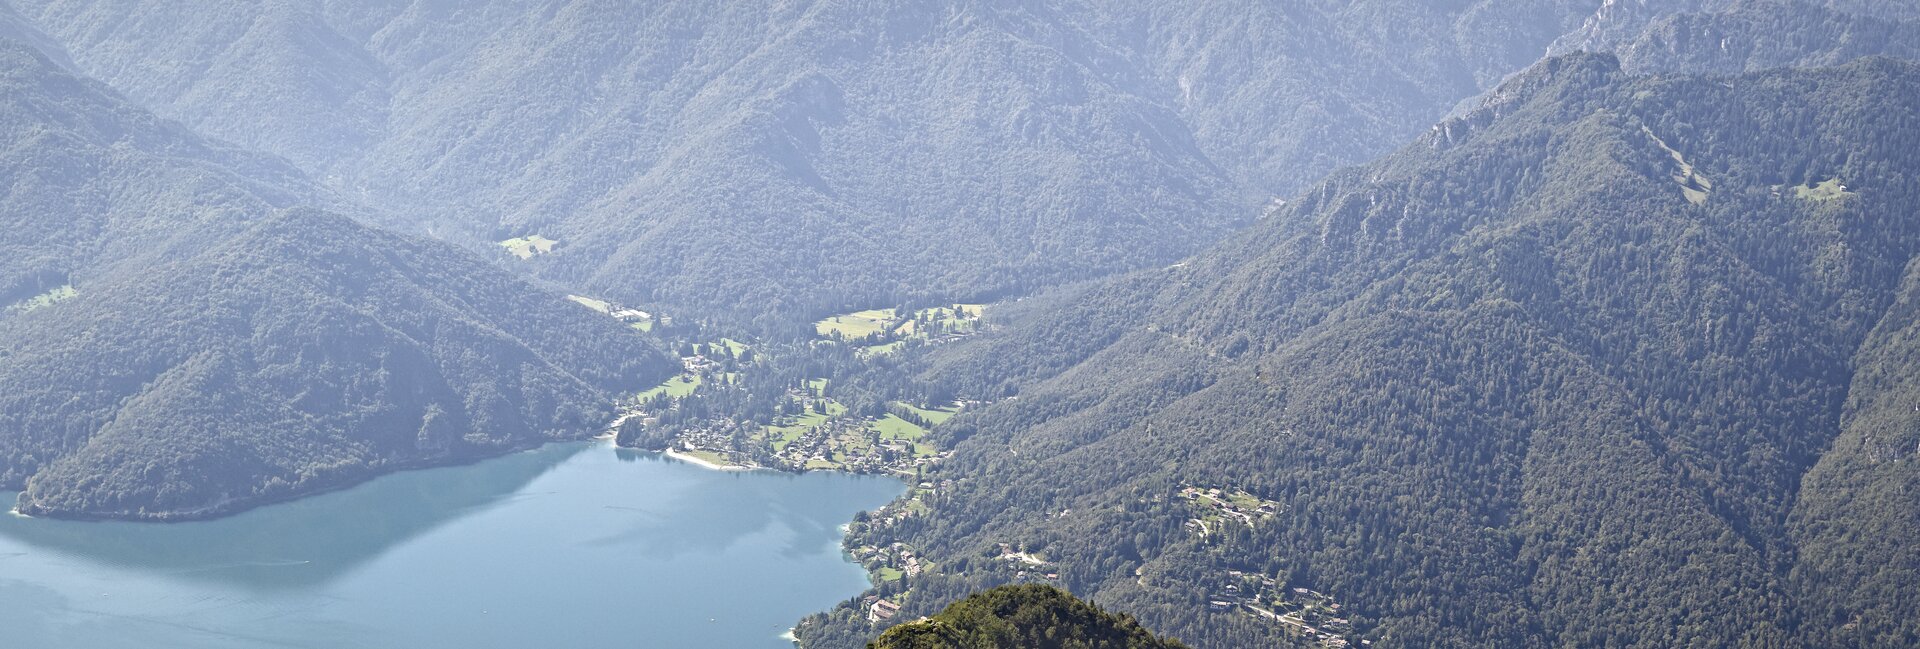 Valle di Ledro - Je ideálním místem pro odpočinkovou i aktivní dovolenou